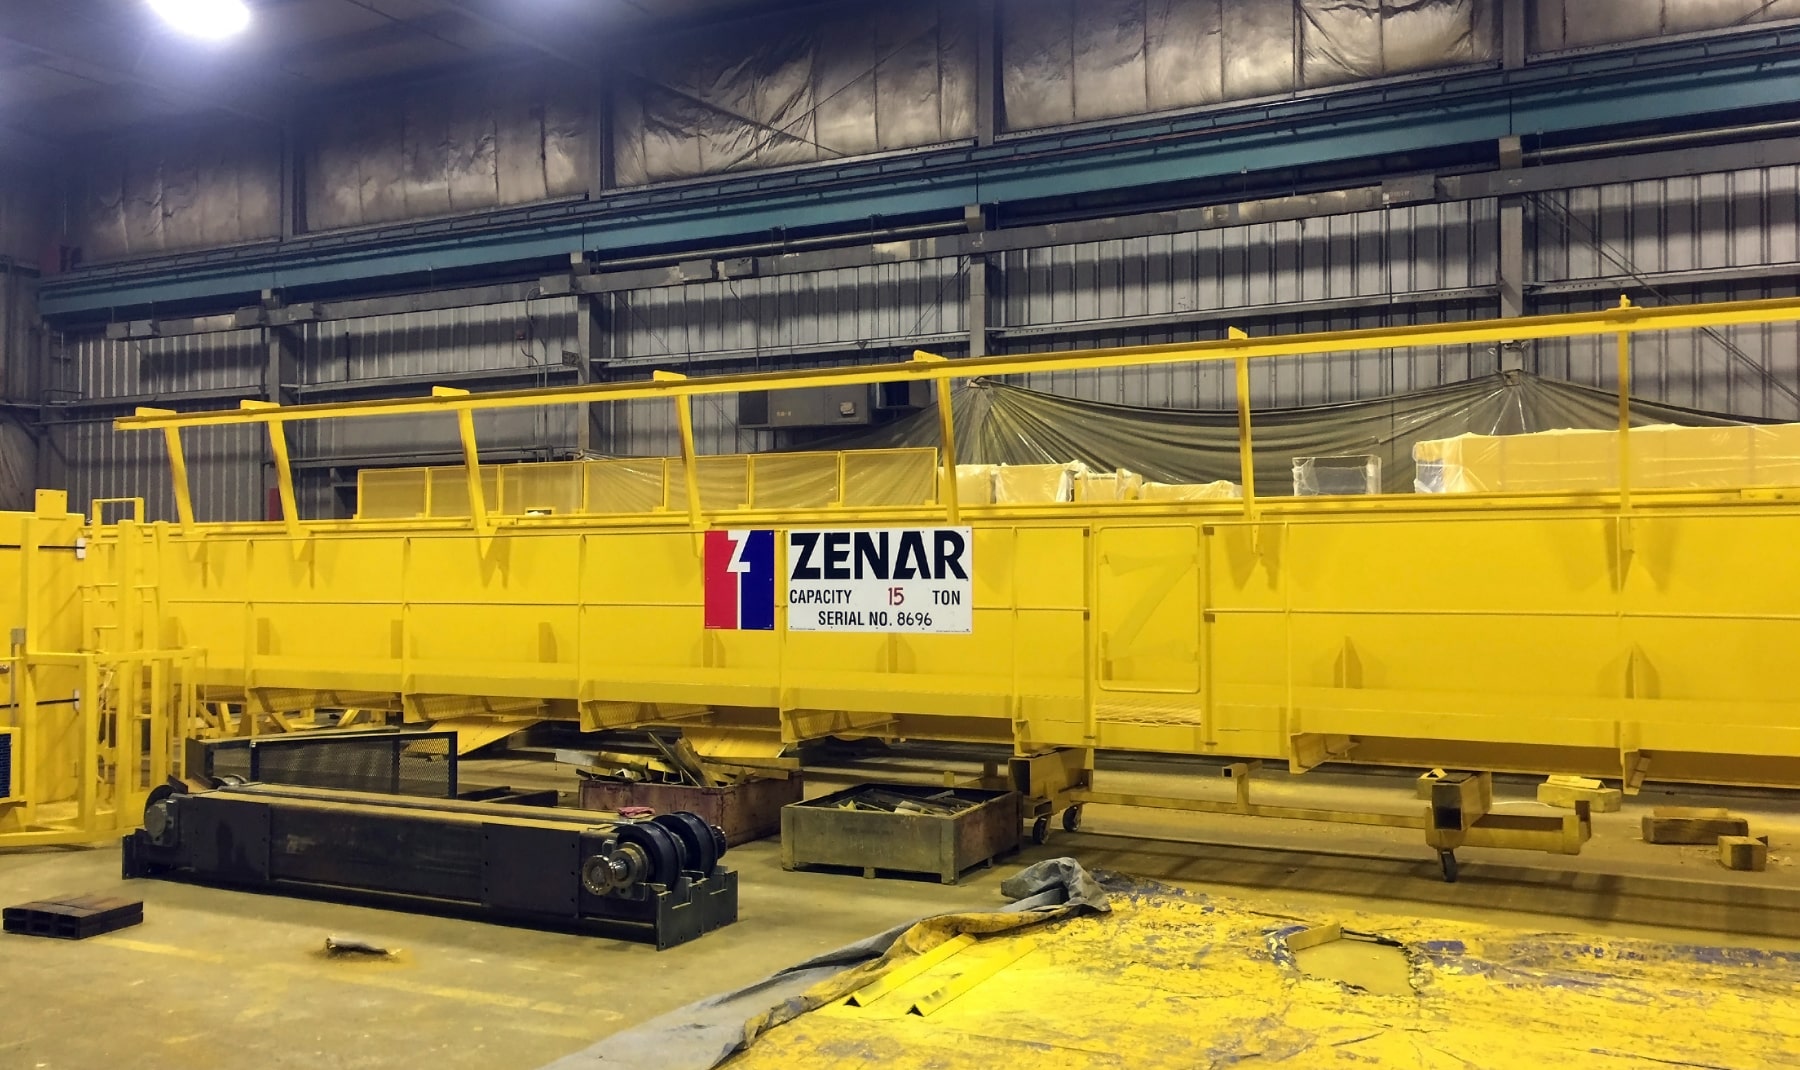 Zenar overhead crane resting on production floor